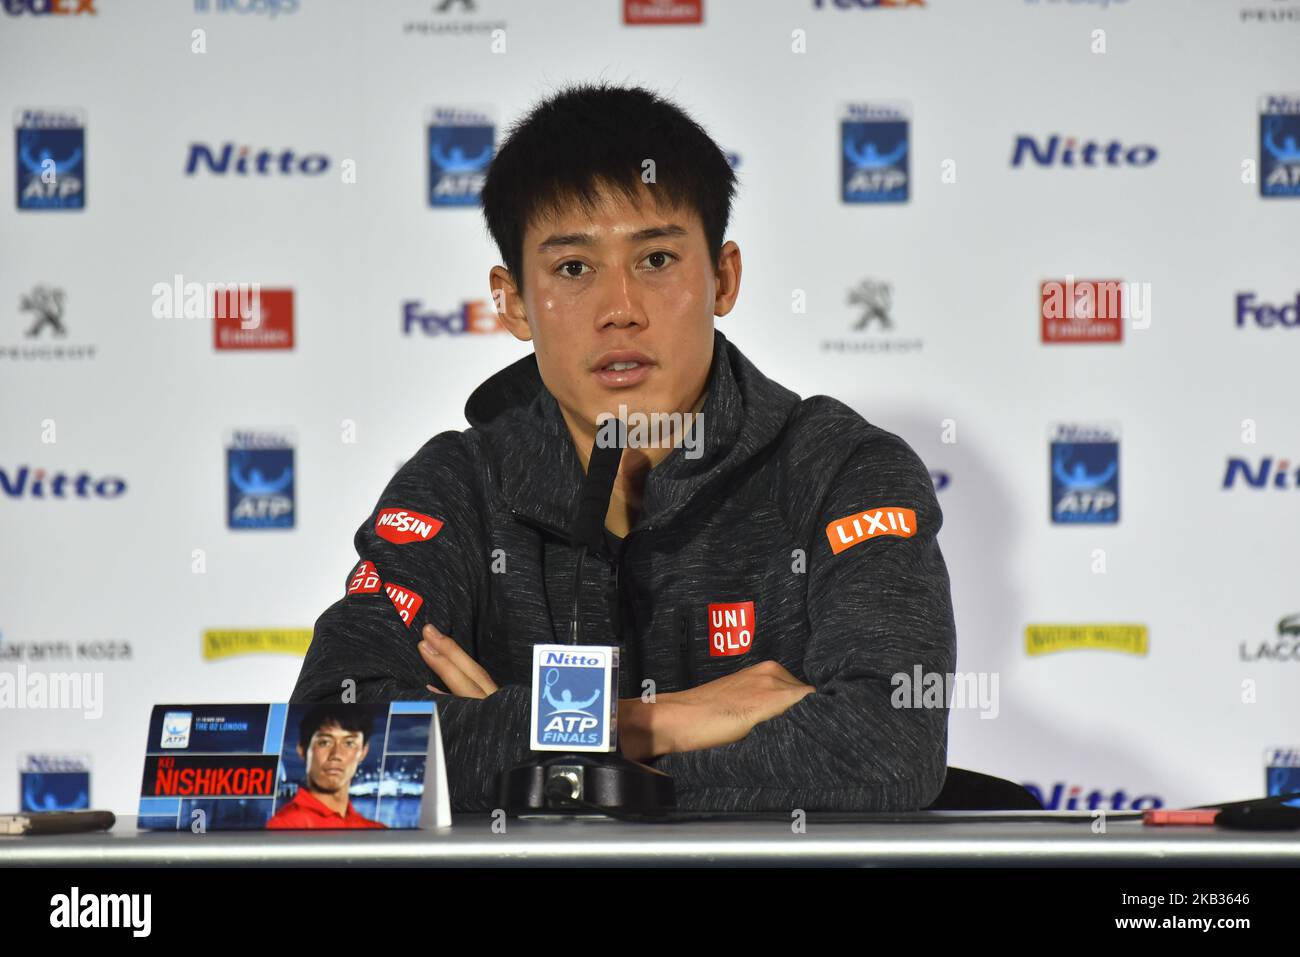 Il giapponese Kei Nishikori è raffigurato durante una conferenza stampa che si terrà il giorno cinque delle finali ATP Nitto alla O2 Arena il 15 novembre 2018 a Londra, Inghilterra. (Foto di Alberto Pezzali/NurPhoto) Foto Stock